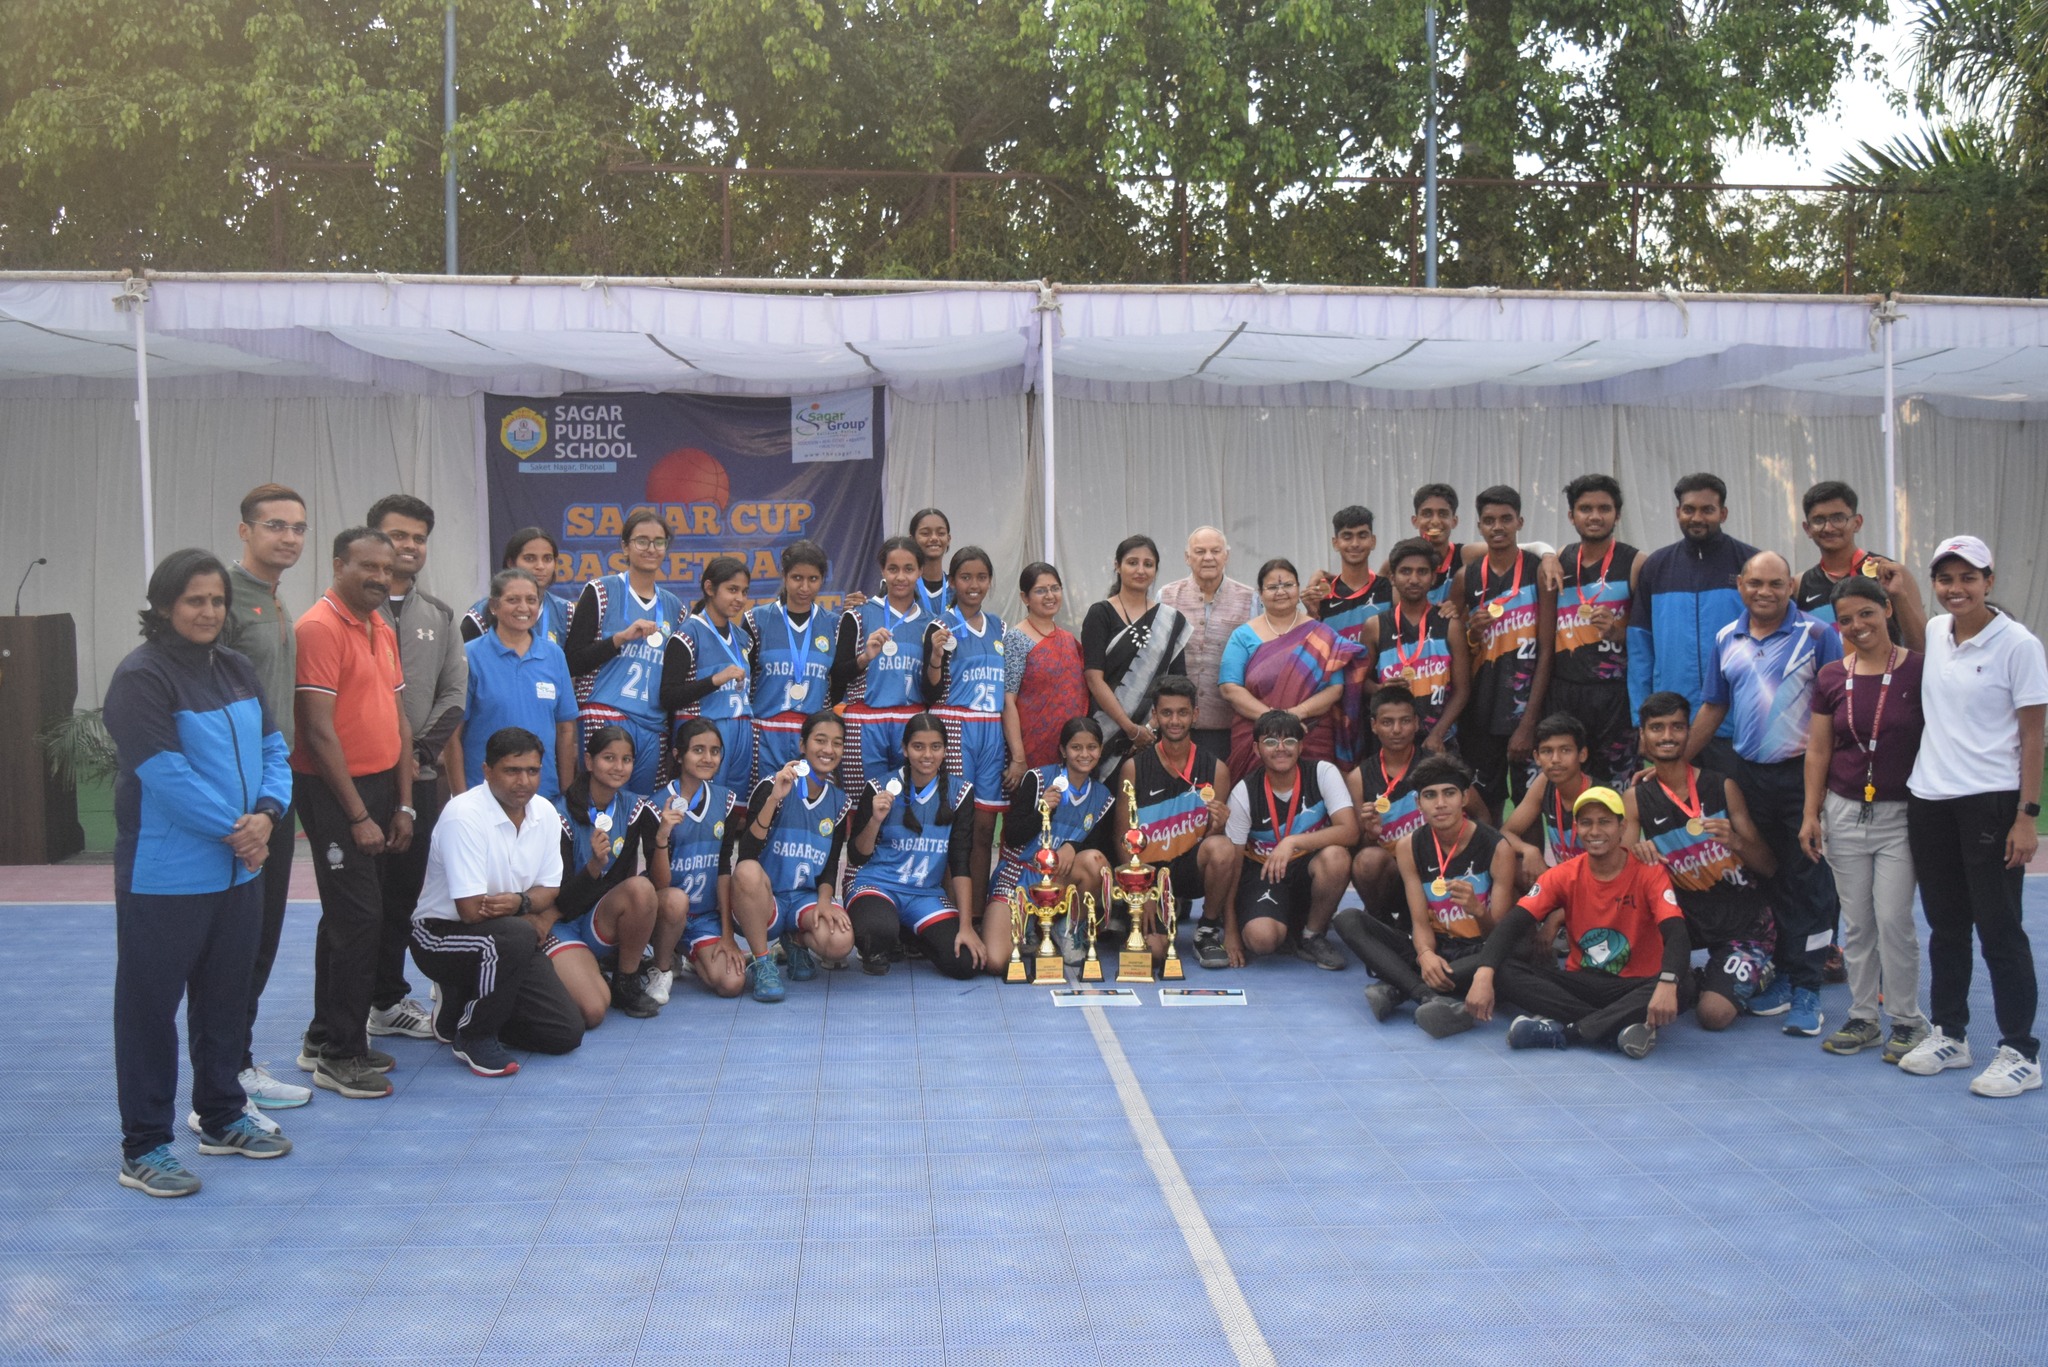 Inter School Sagar Cup Basketball Tournament